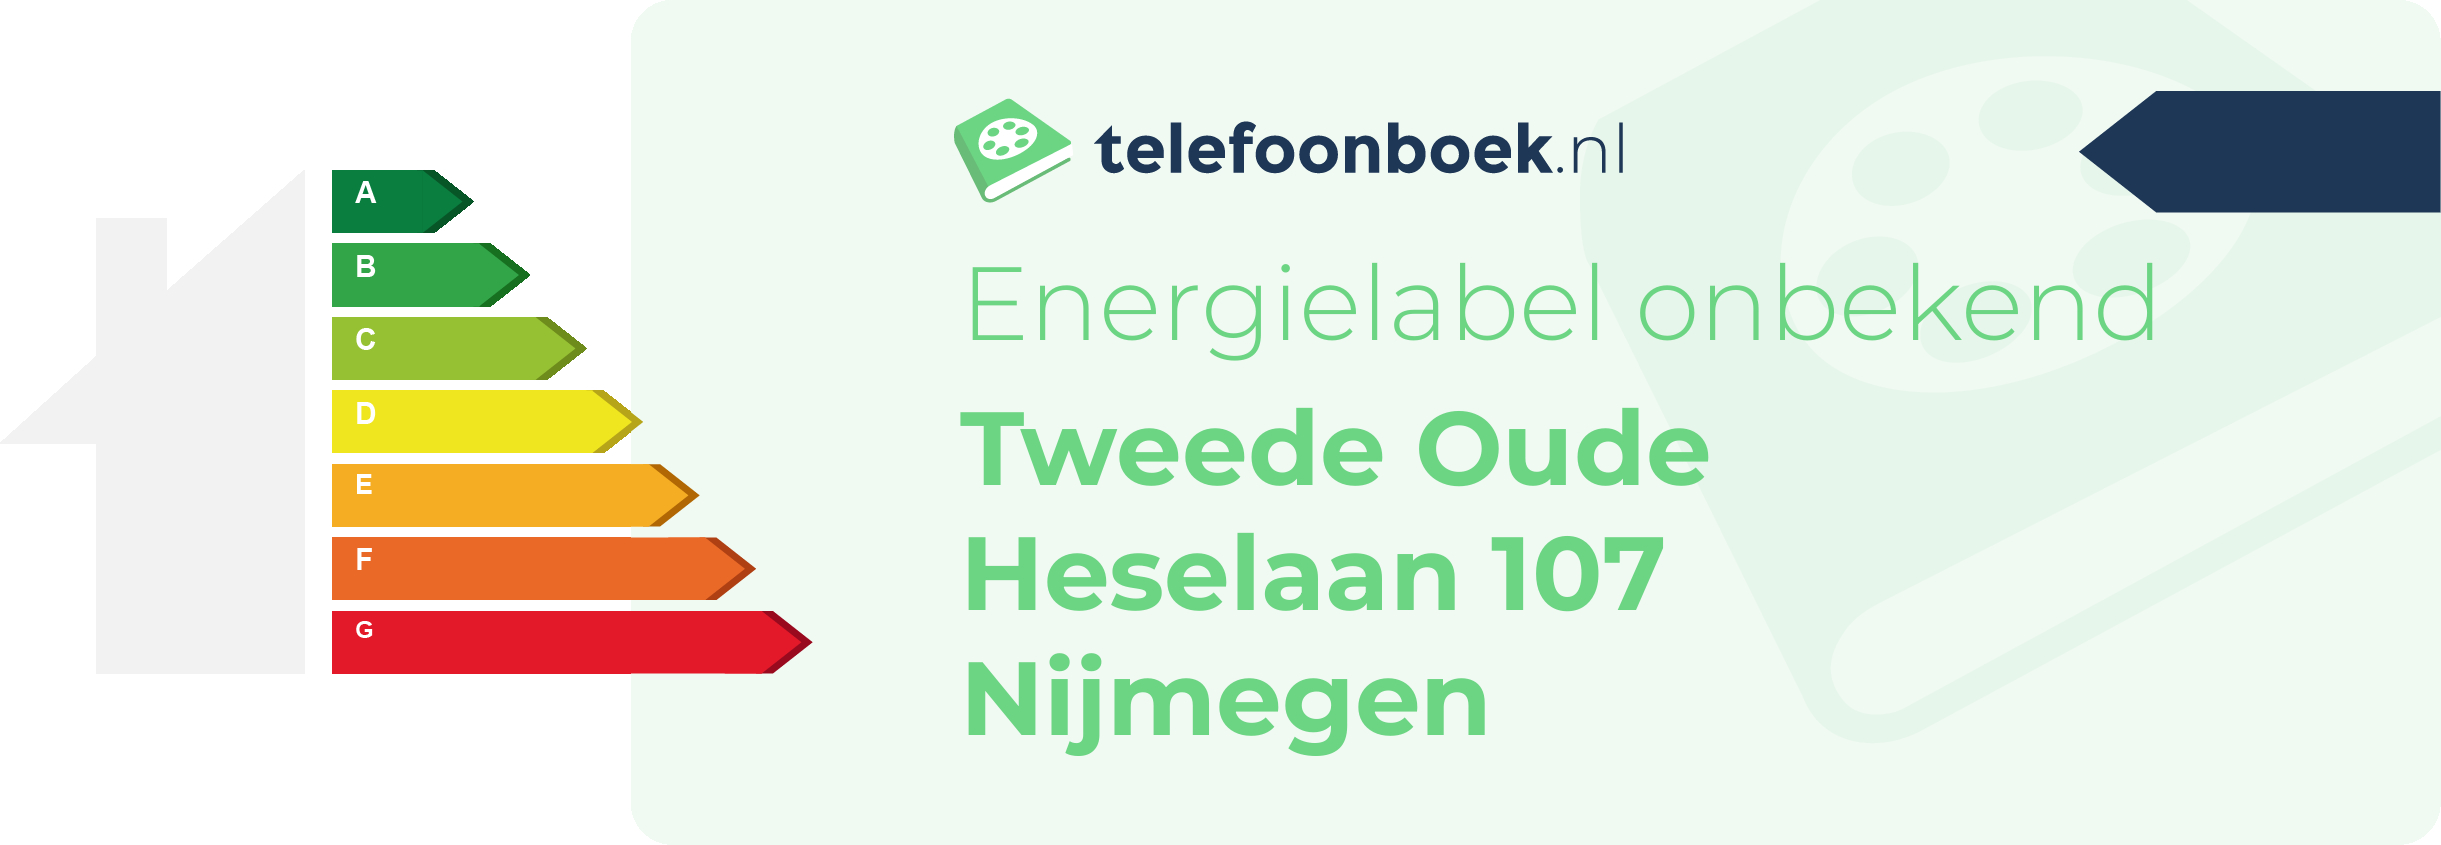 Energielabel Tweede Oude Heselaan 107 Nijmegen